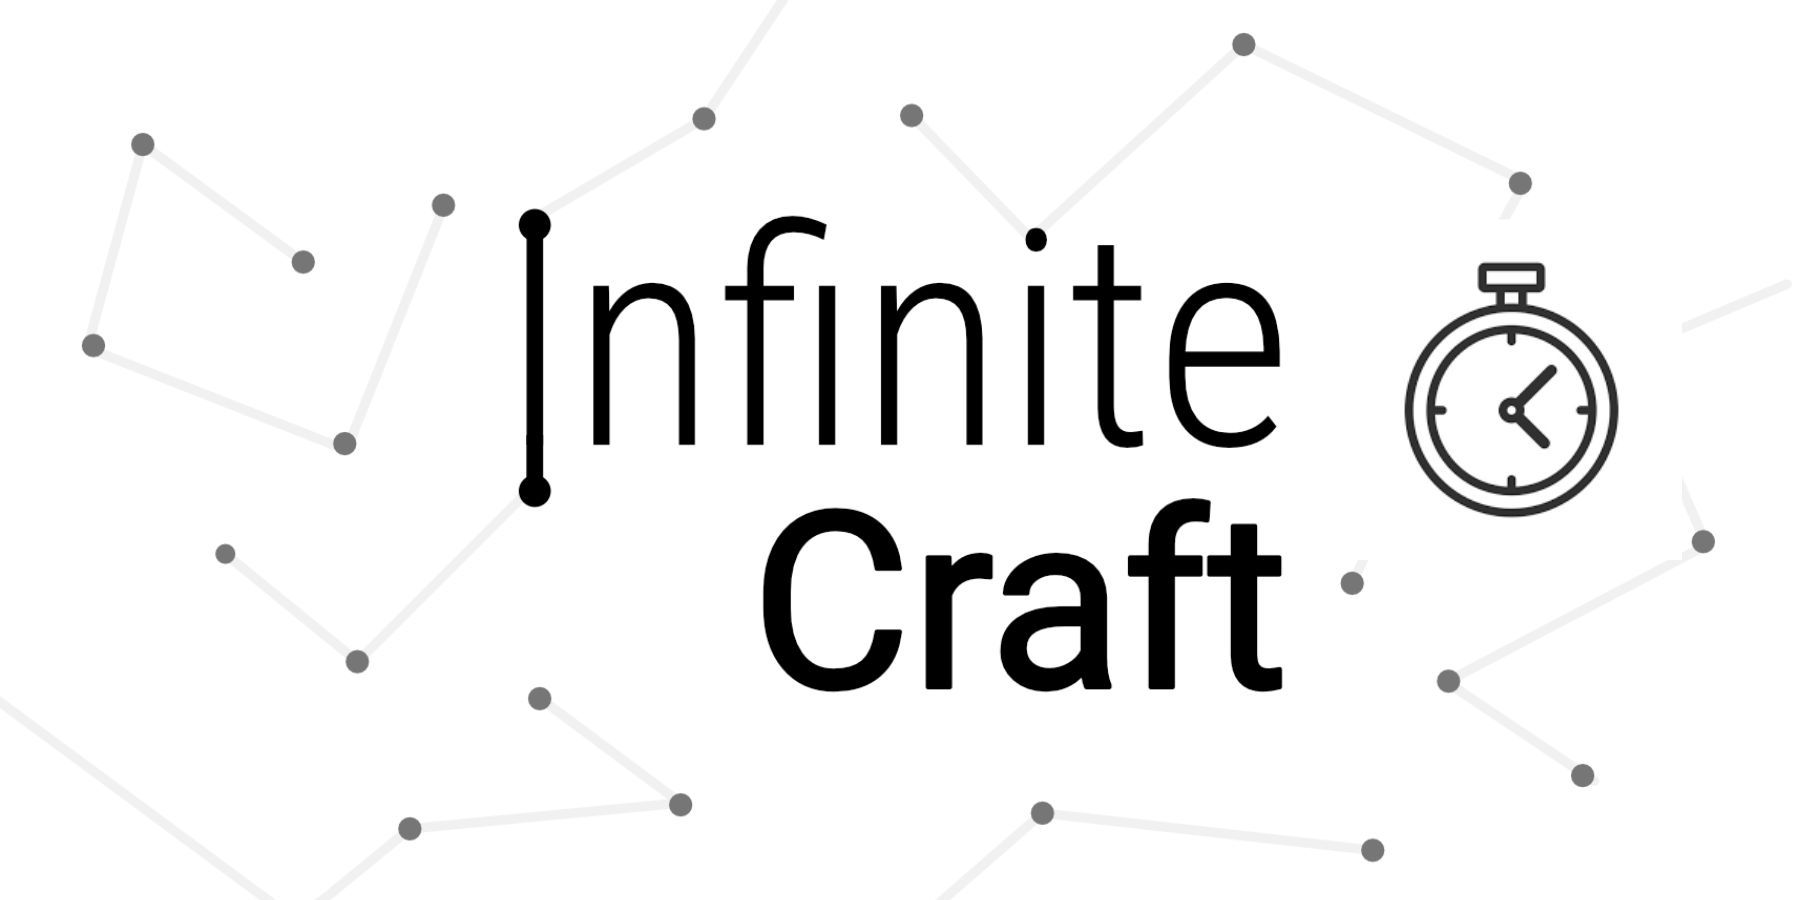 Вы сейчас просматриваете Infinite Craft: как выиграть время